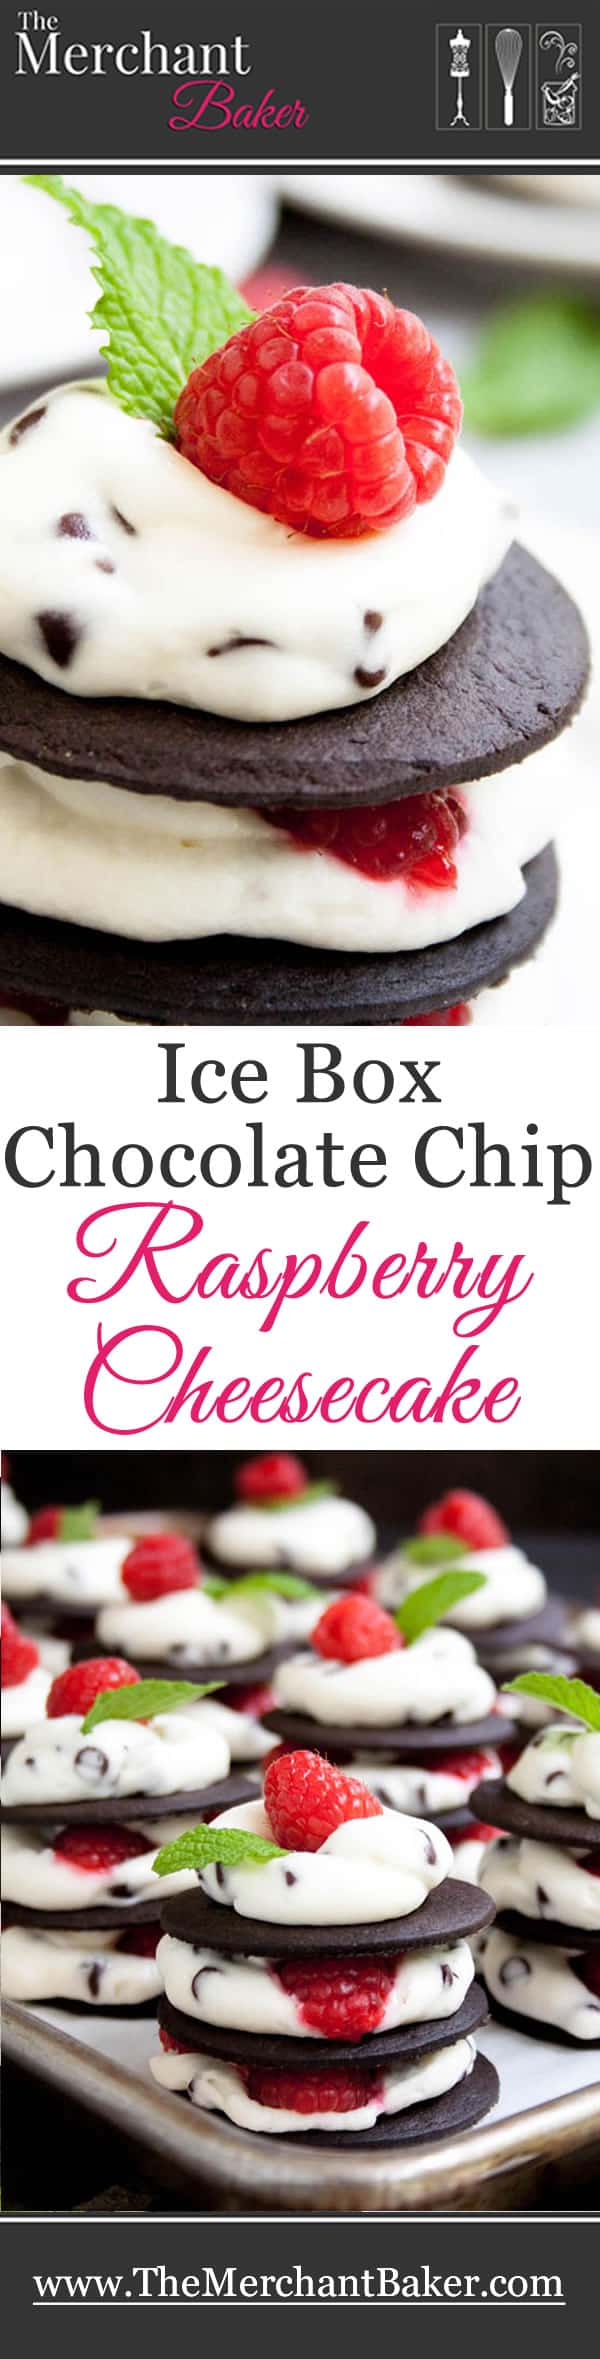 Ice Box Chocolate Chip Raspberry Cheesecake